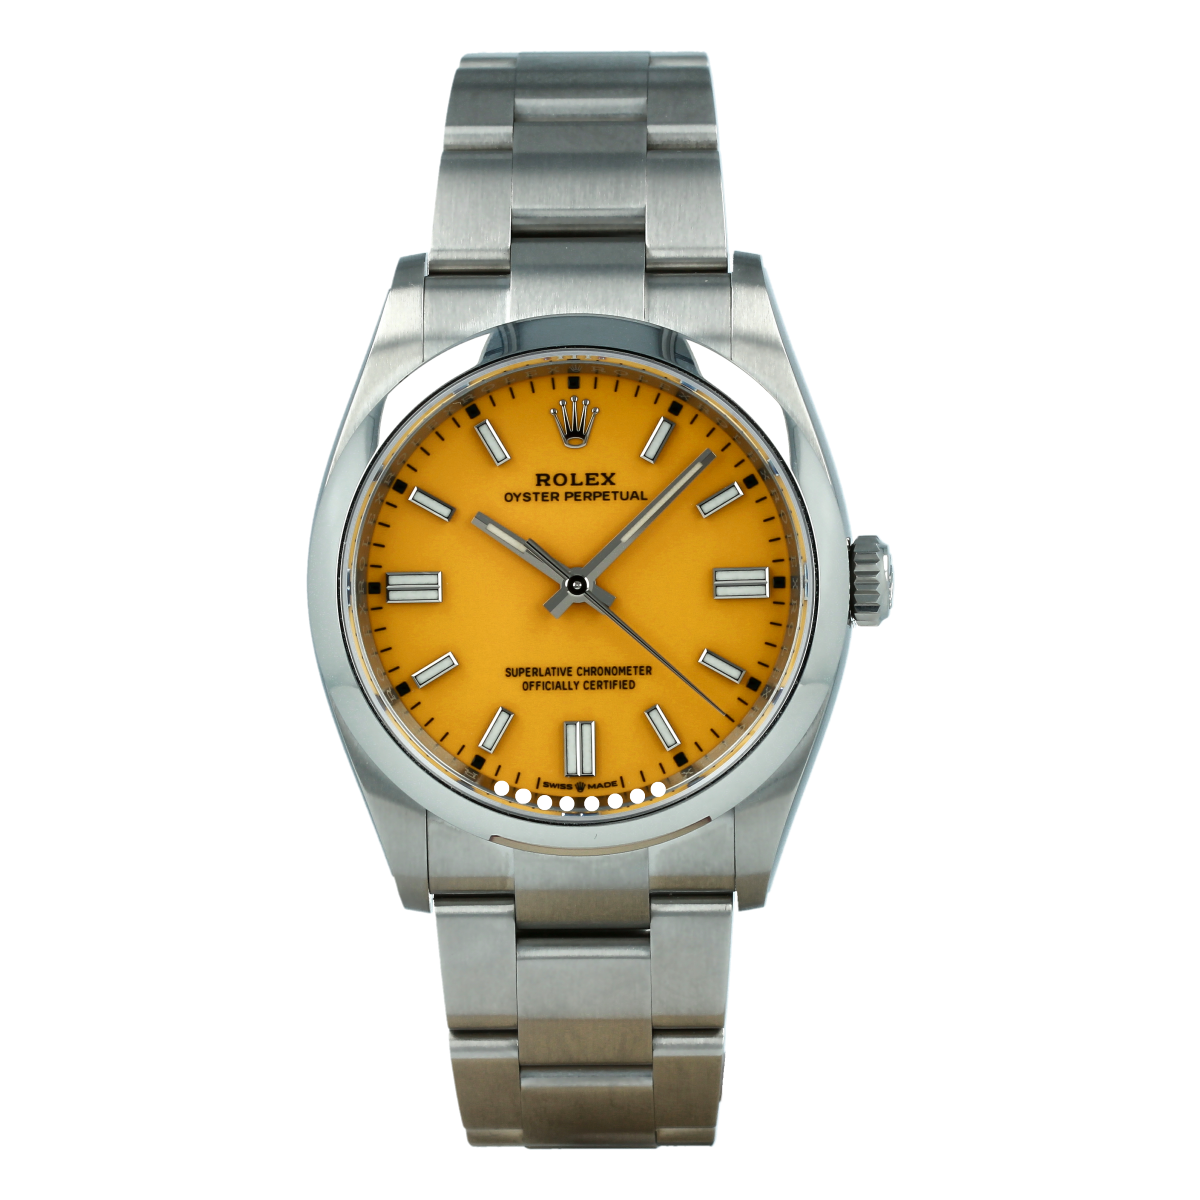 Rolex Oyster Perpetual 126000 36mm Esfera Amarilla *Nuevo Modelo* | Comprar reloj Rolex de segunda mano